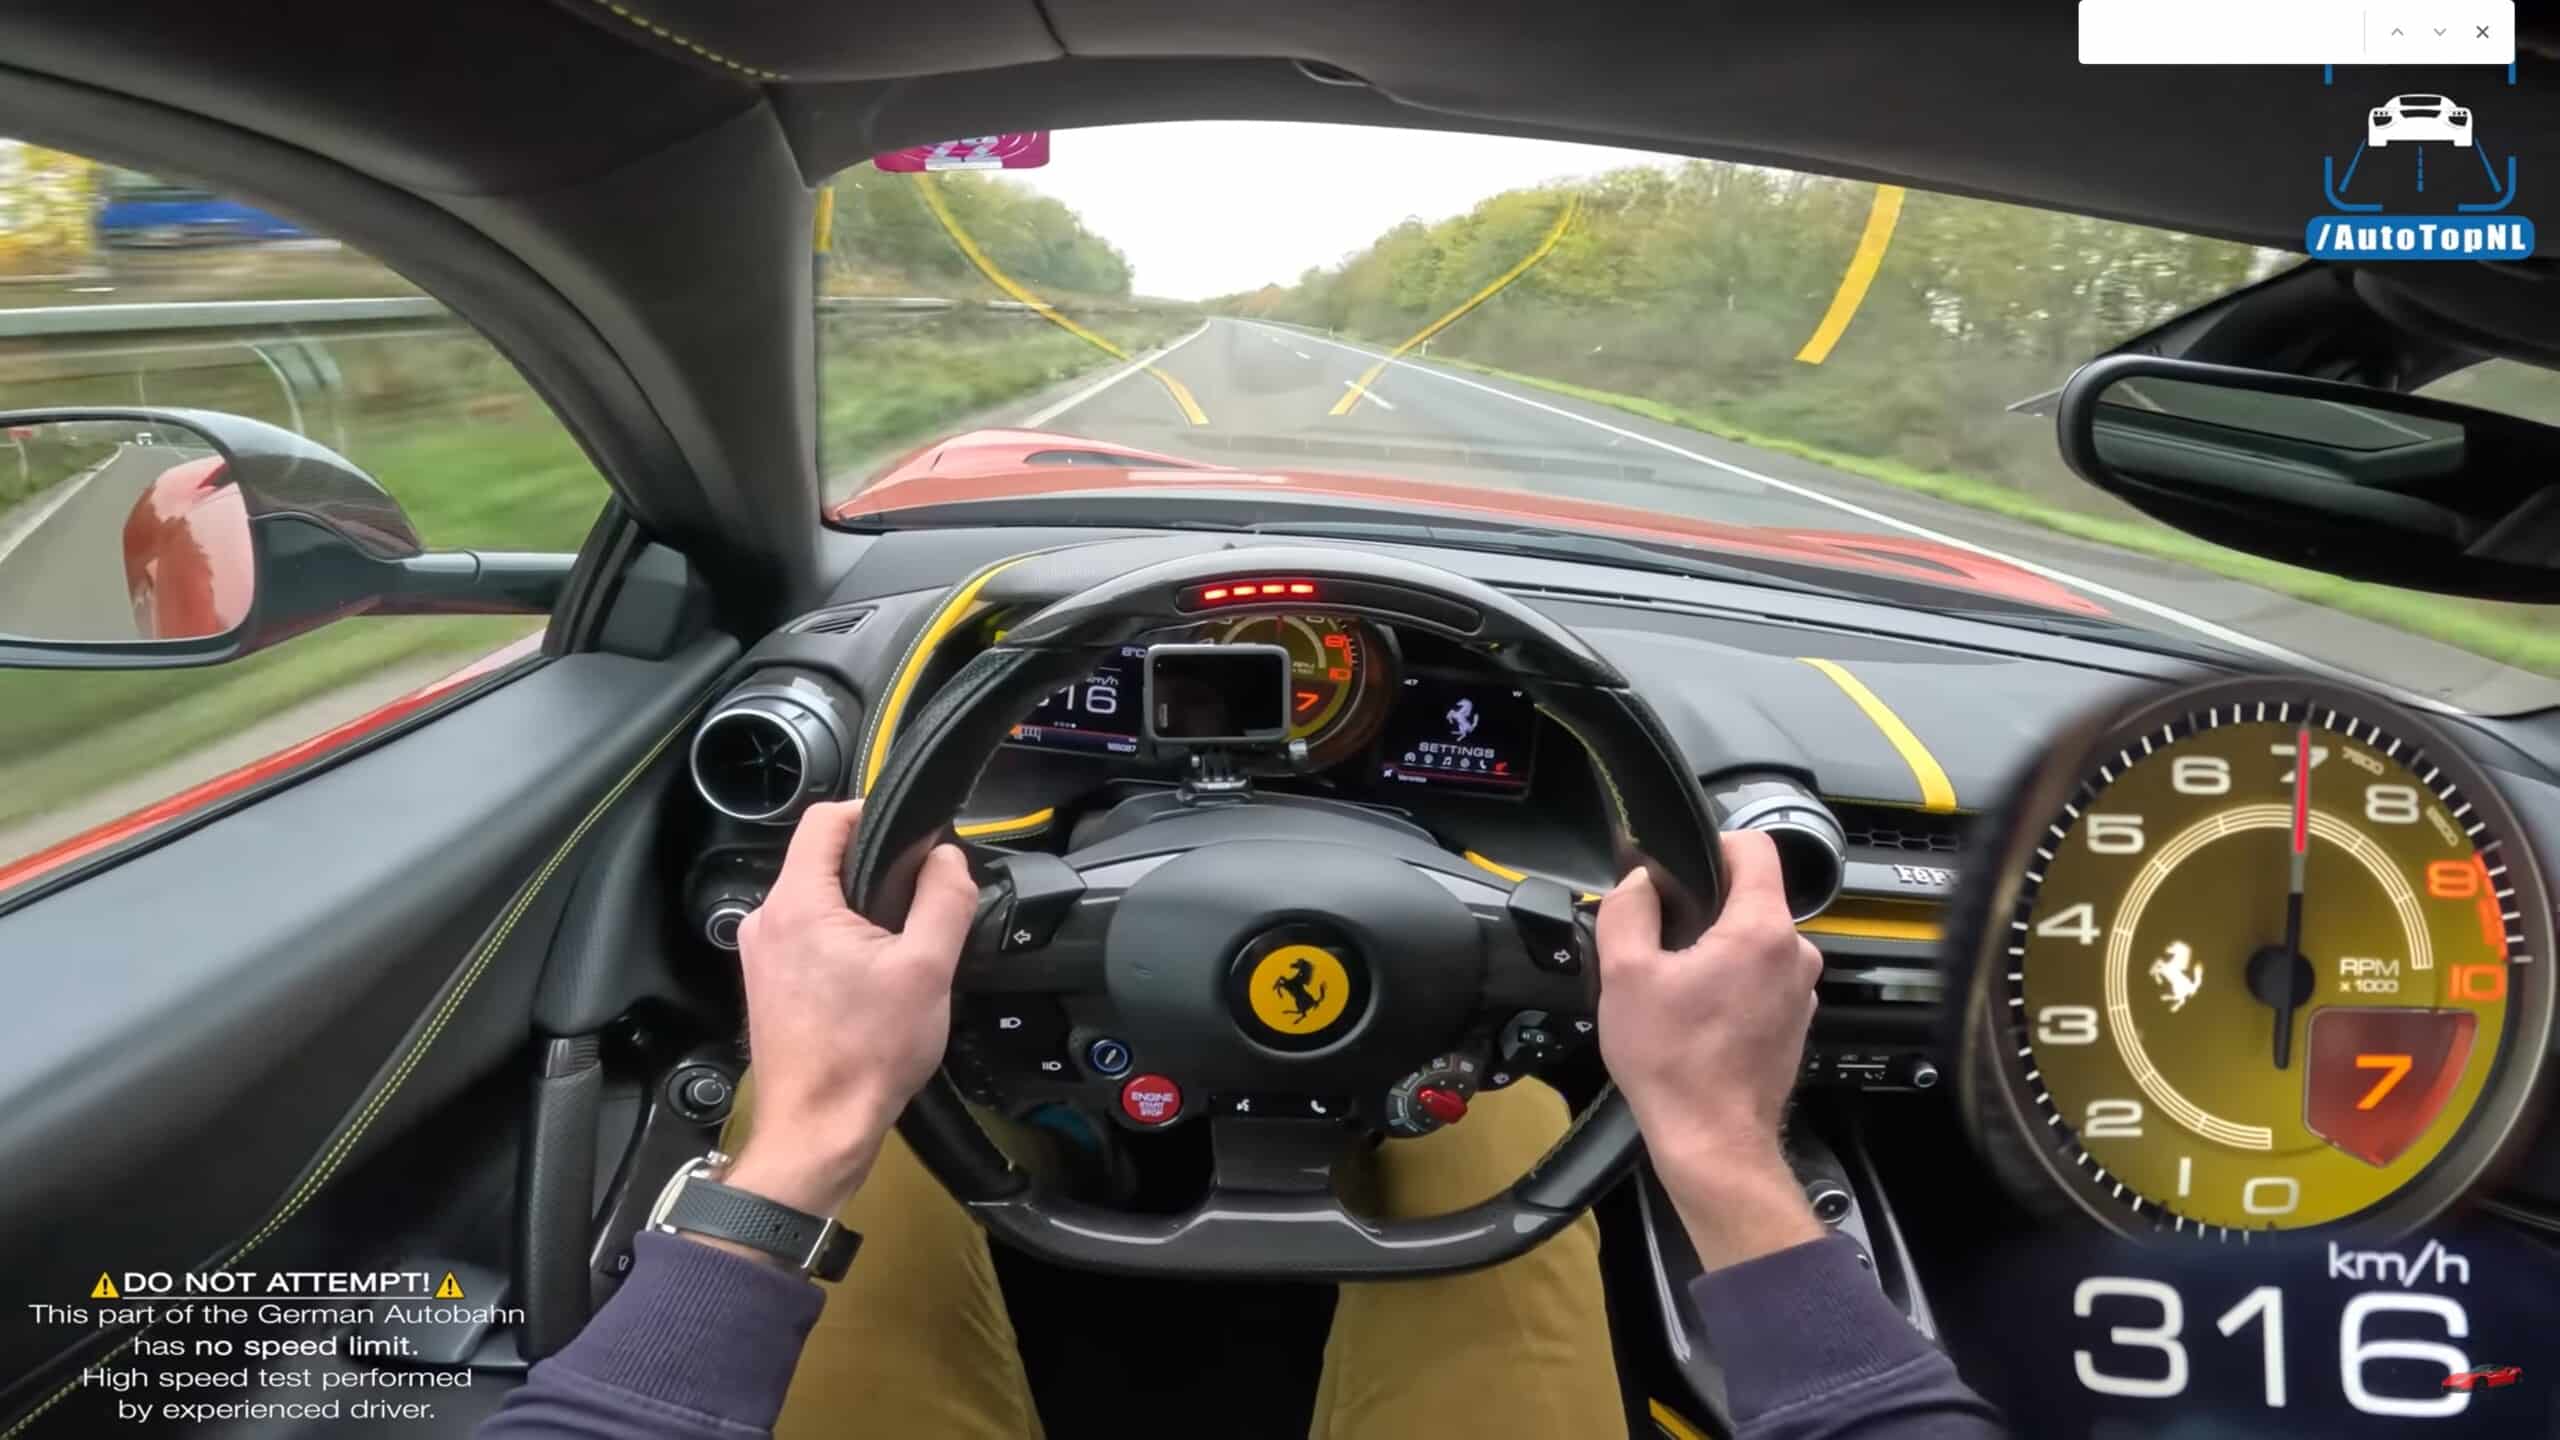 Questa Ferrari 812 Superfast va veramente forte in Autobahn: il VIDEO toglie il fiato